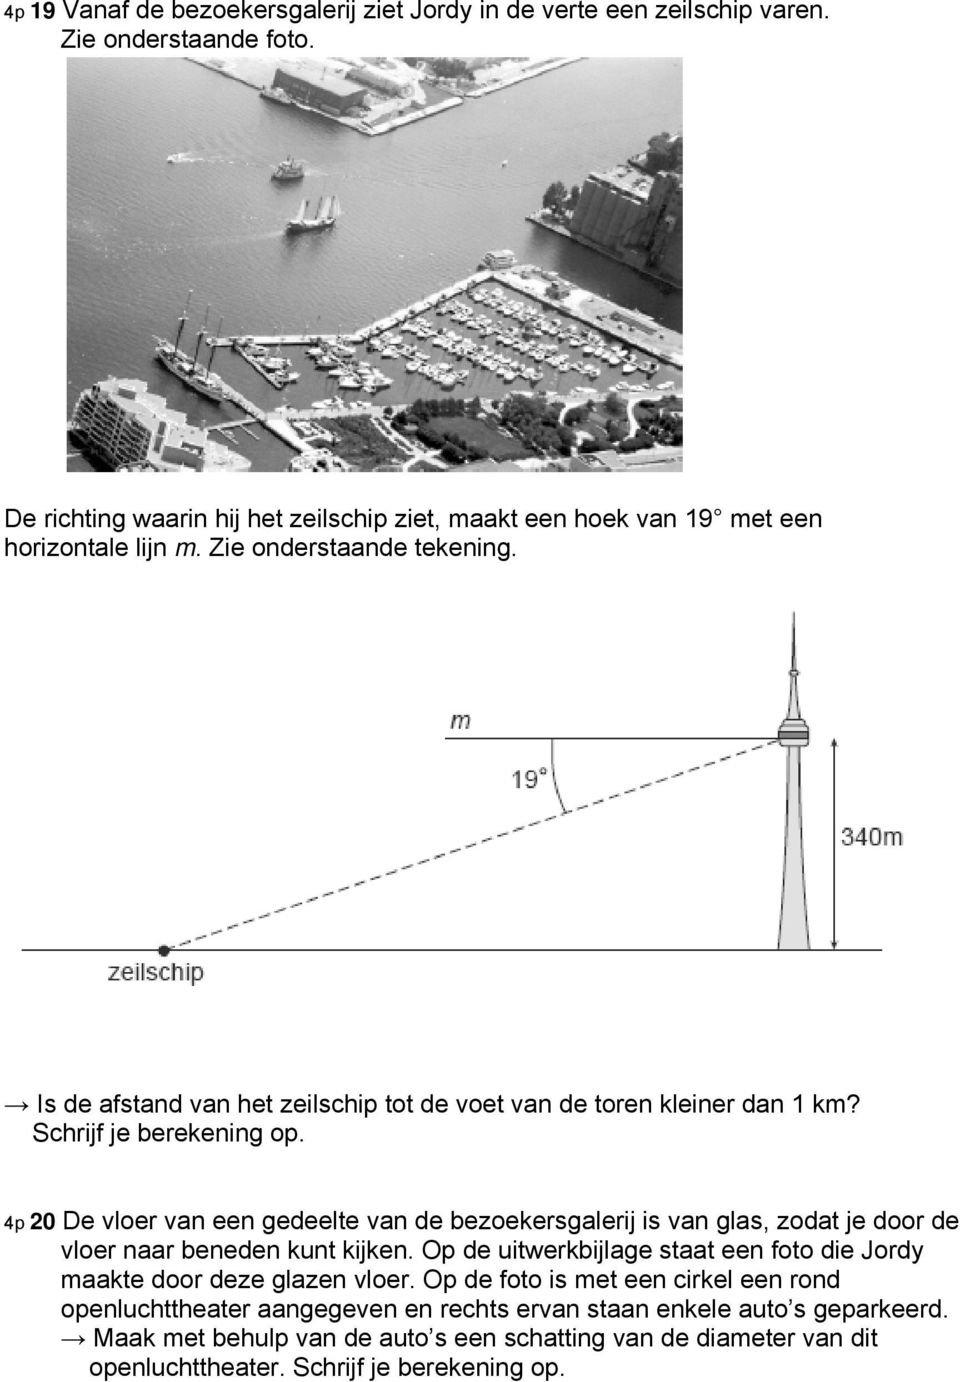 Is de afstand van het zeilschip tot de voet van de toren kleiner dan 1 km? Schrijf je berekening op.